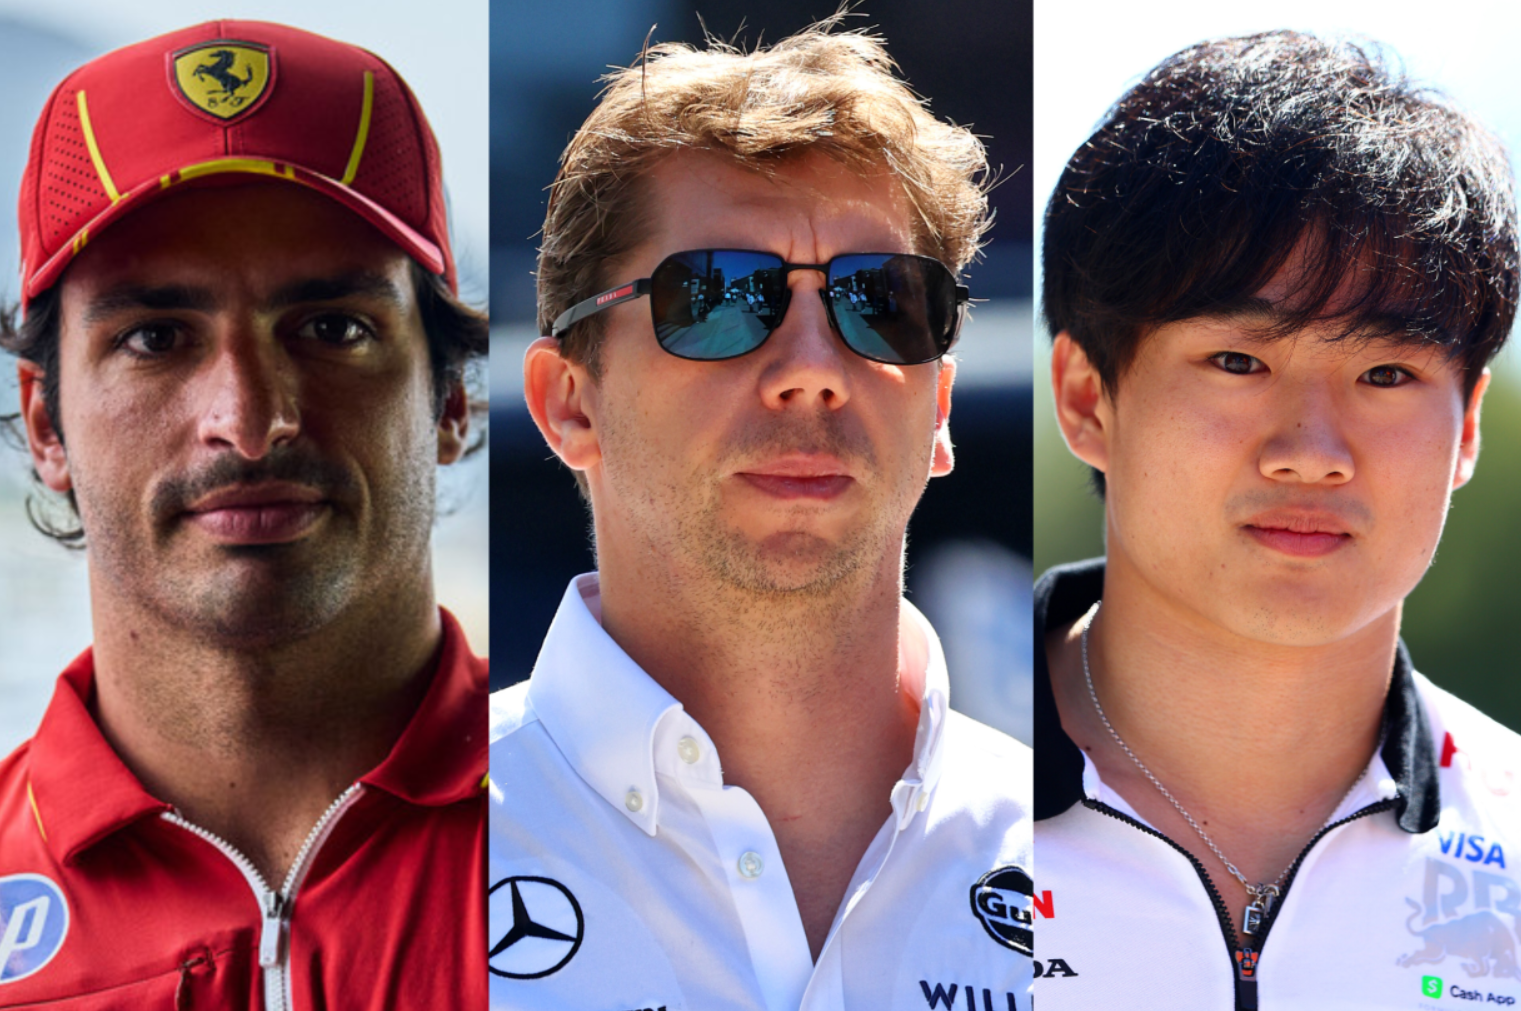 Rynek w F1 przyspiesza: Sainz łączony z Williamsem, Tsunoda może namieszać